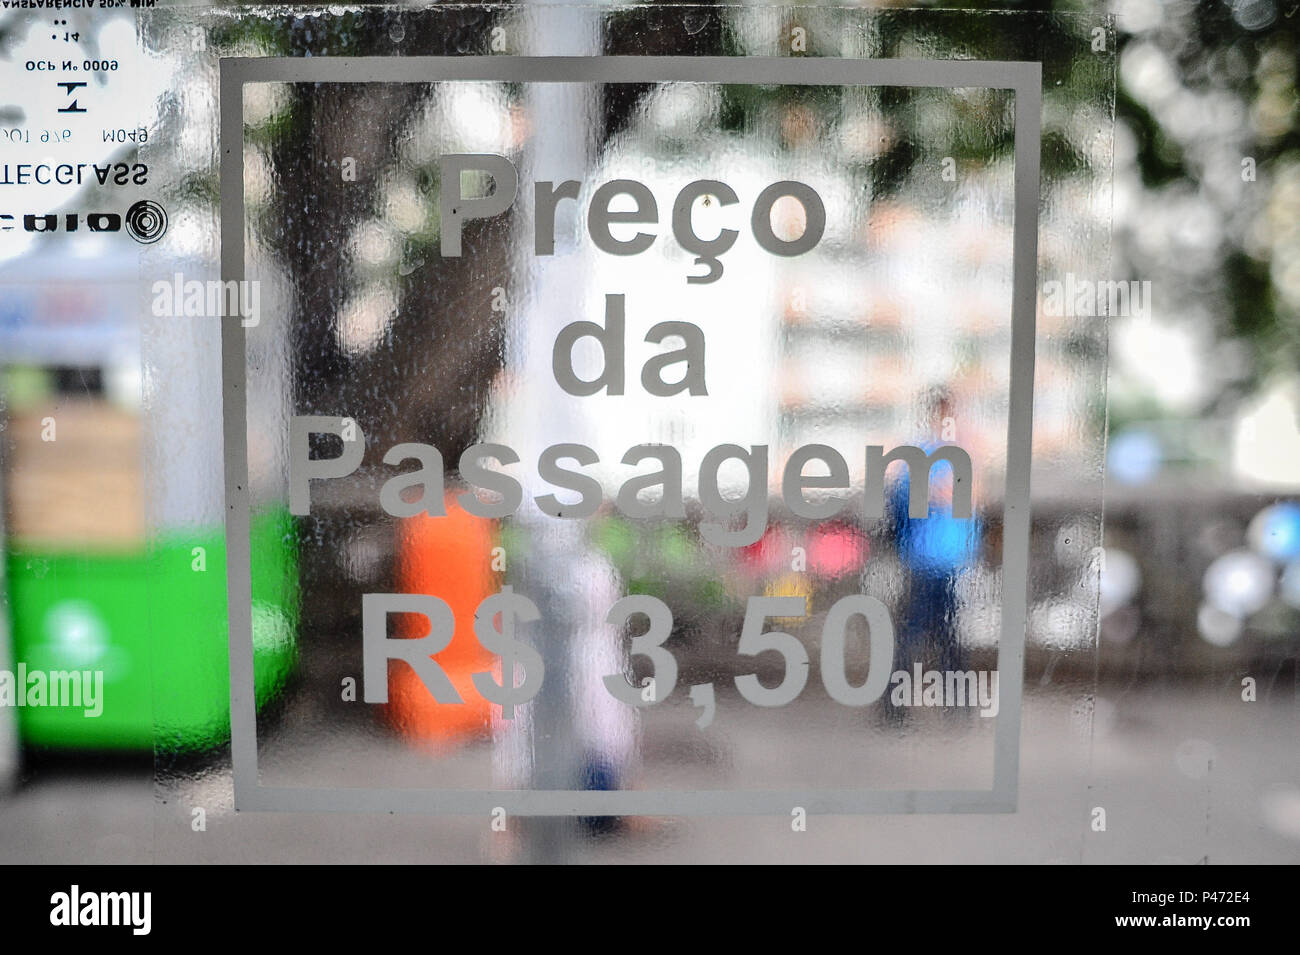 SÃO PAULO, SP - 06/01/2015: AUMENTO DAS TARIFAS EM SP-Aumento das Tarifas em SP. Wie passagens de ônibus, trens e die Metrô de São Paulo estão Mais caras Index desta Quinta da Terça sehr wohl fühlte - Feira (6). Ein tarifa passou de R $ 3 para R $ 3,50. O valor Vale para os ônibus da Kapital Paulista, Alem tun die Metrô e da KPTM, que atendem ein Região Metropolitana. O Valor da integração também subiu de R $ 4,65 para R $ 5,45. (Foto: Adriano Lima/Fotoarena) Stockfoto